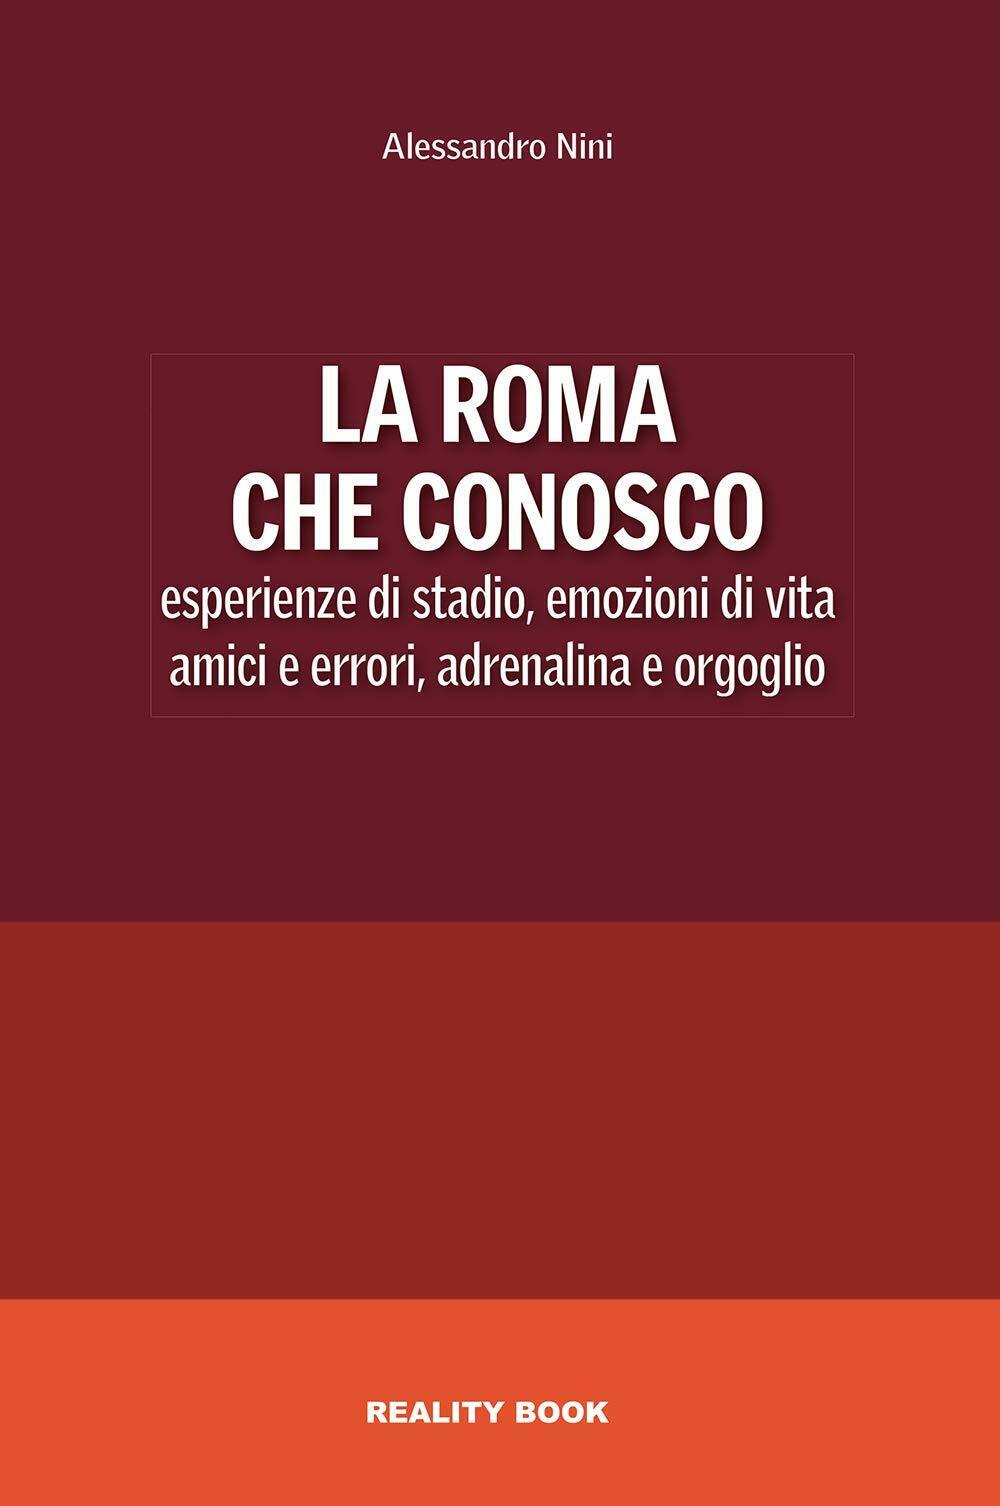 La Roma che conosco - Alessandro Nini - Reality Book, 2021